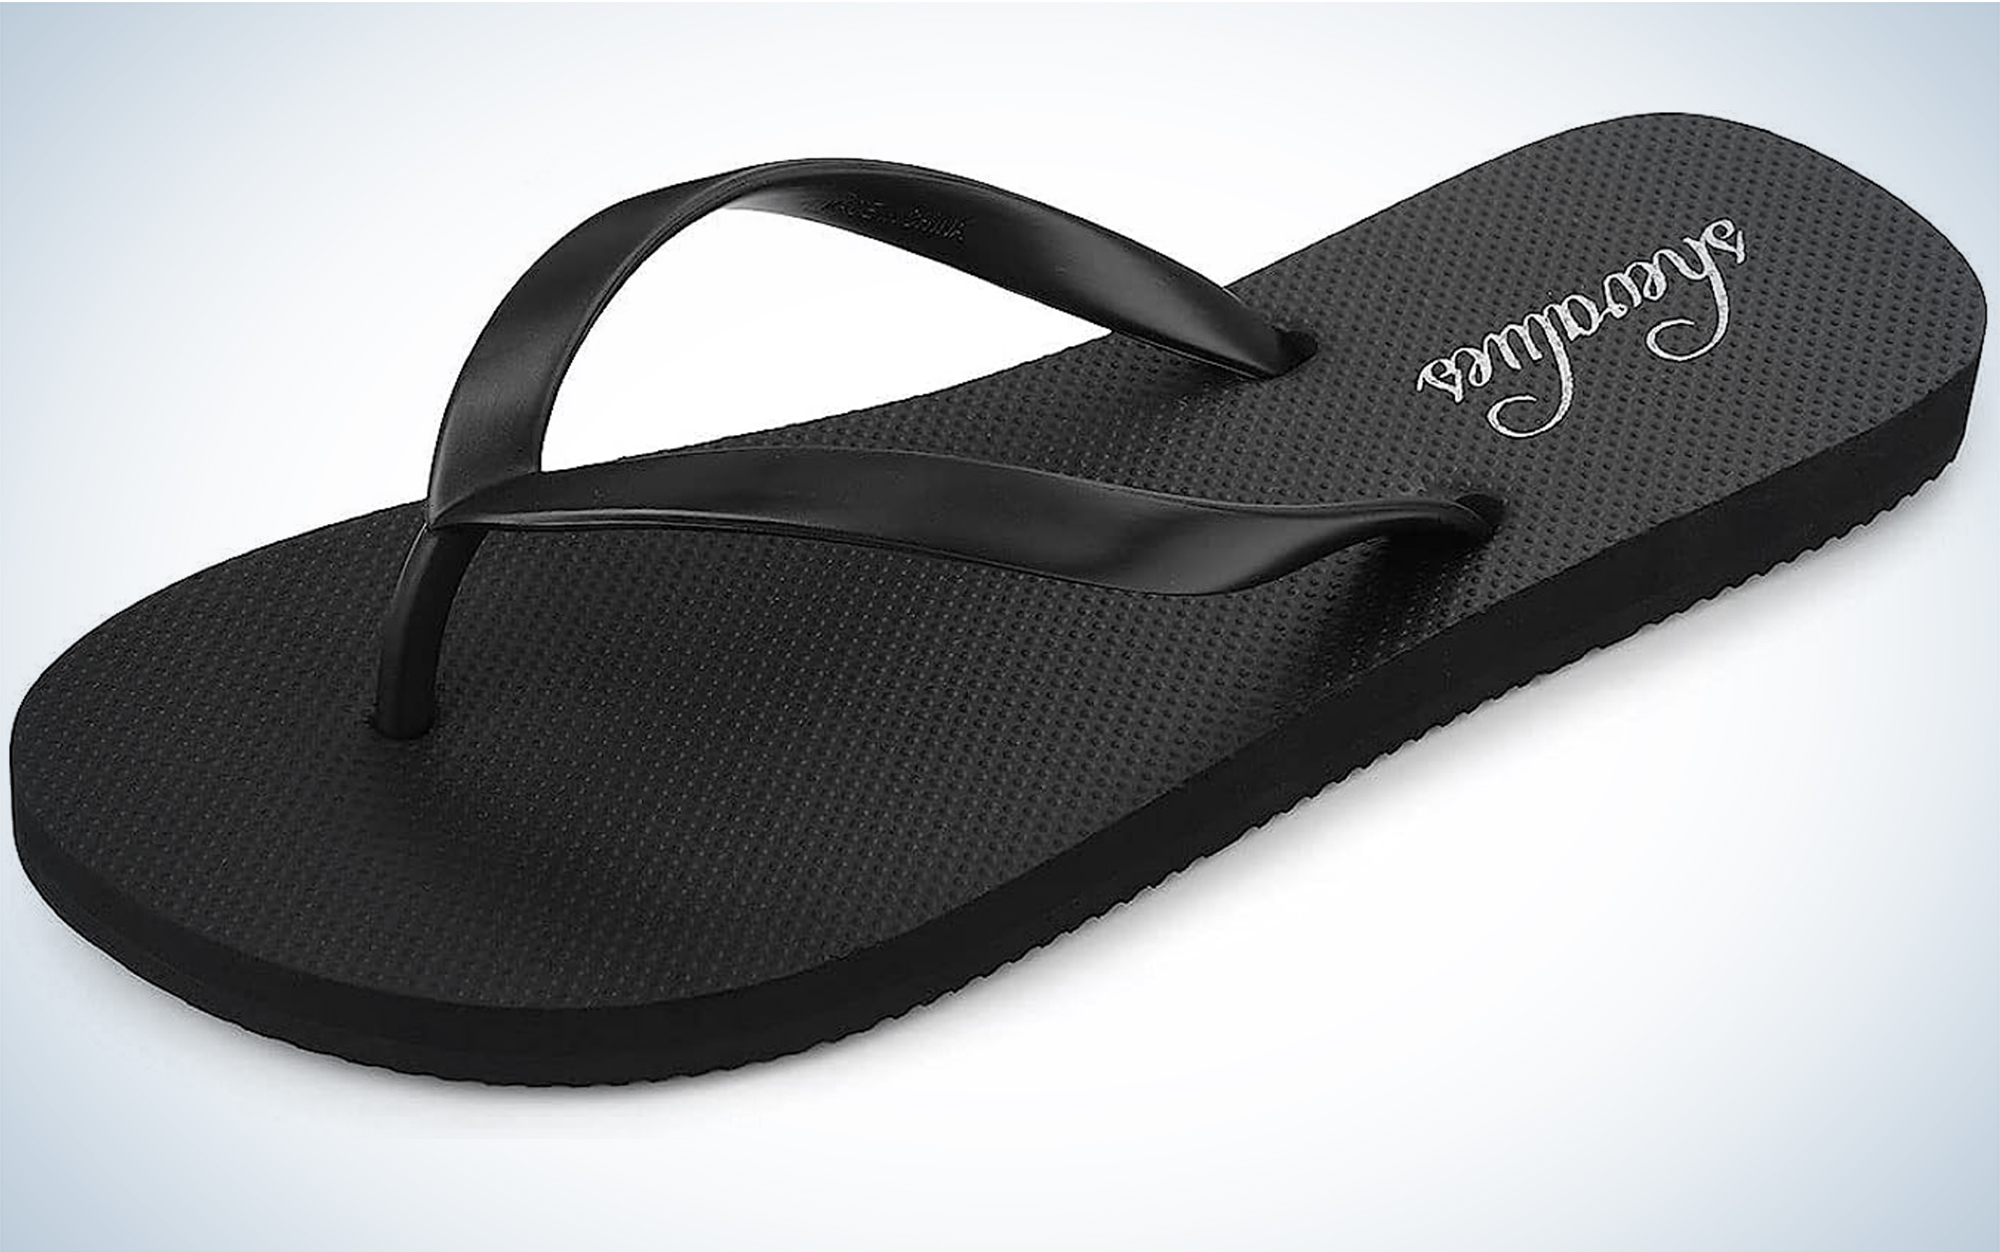 Flip flops are a lightweight camp shoe.